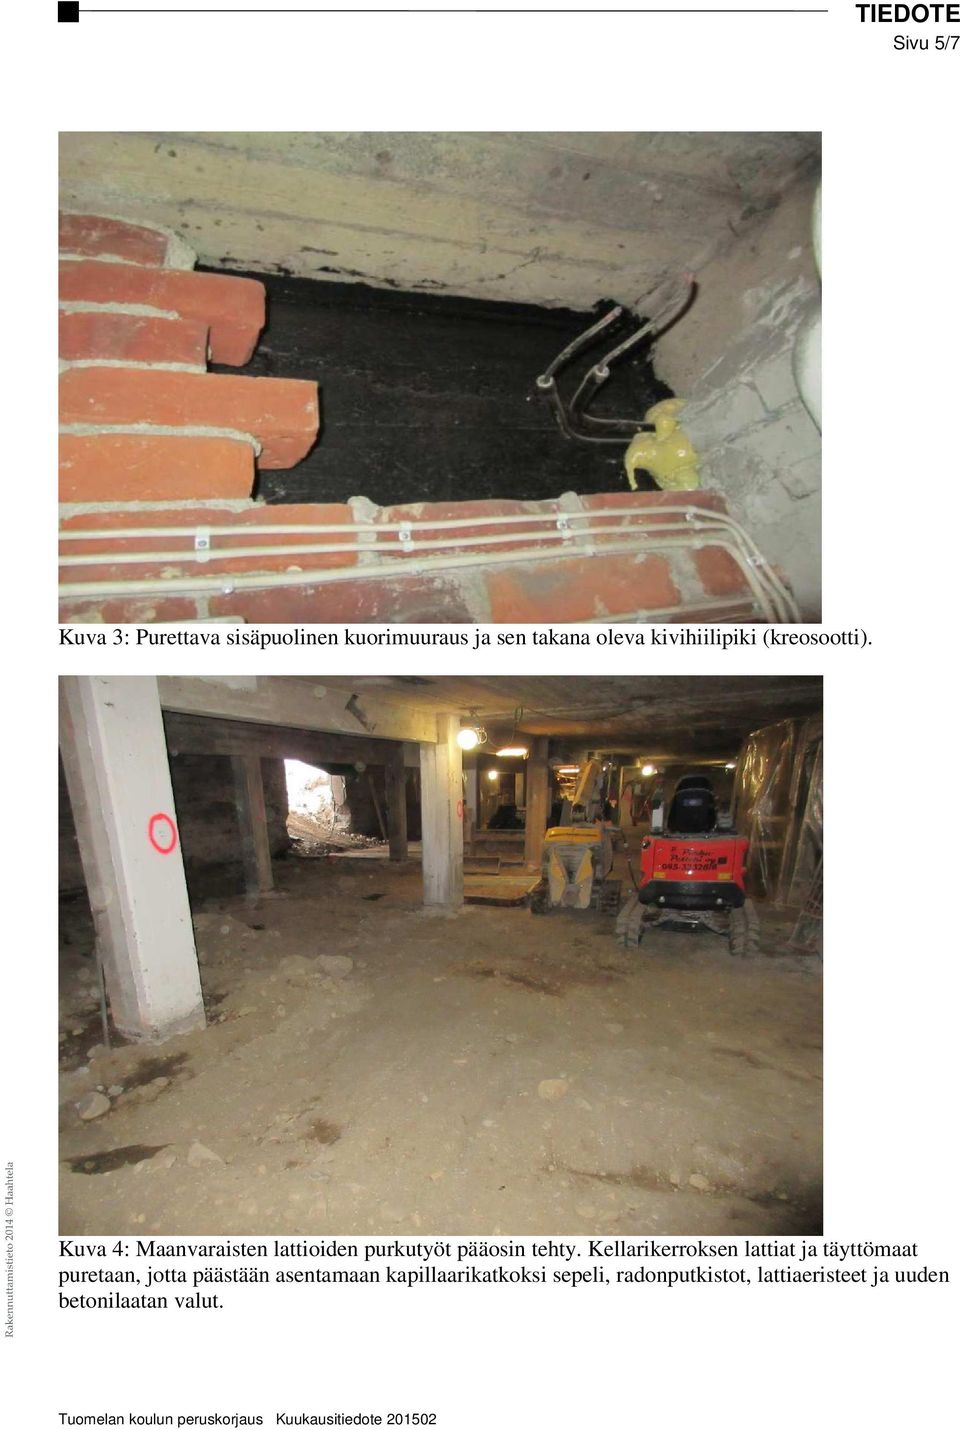 Kuva 4: Maanvaraisten lattioiden purkutyöt pääosin tehty.